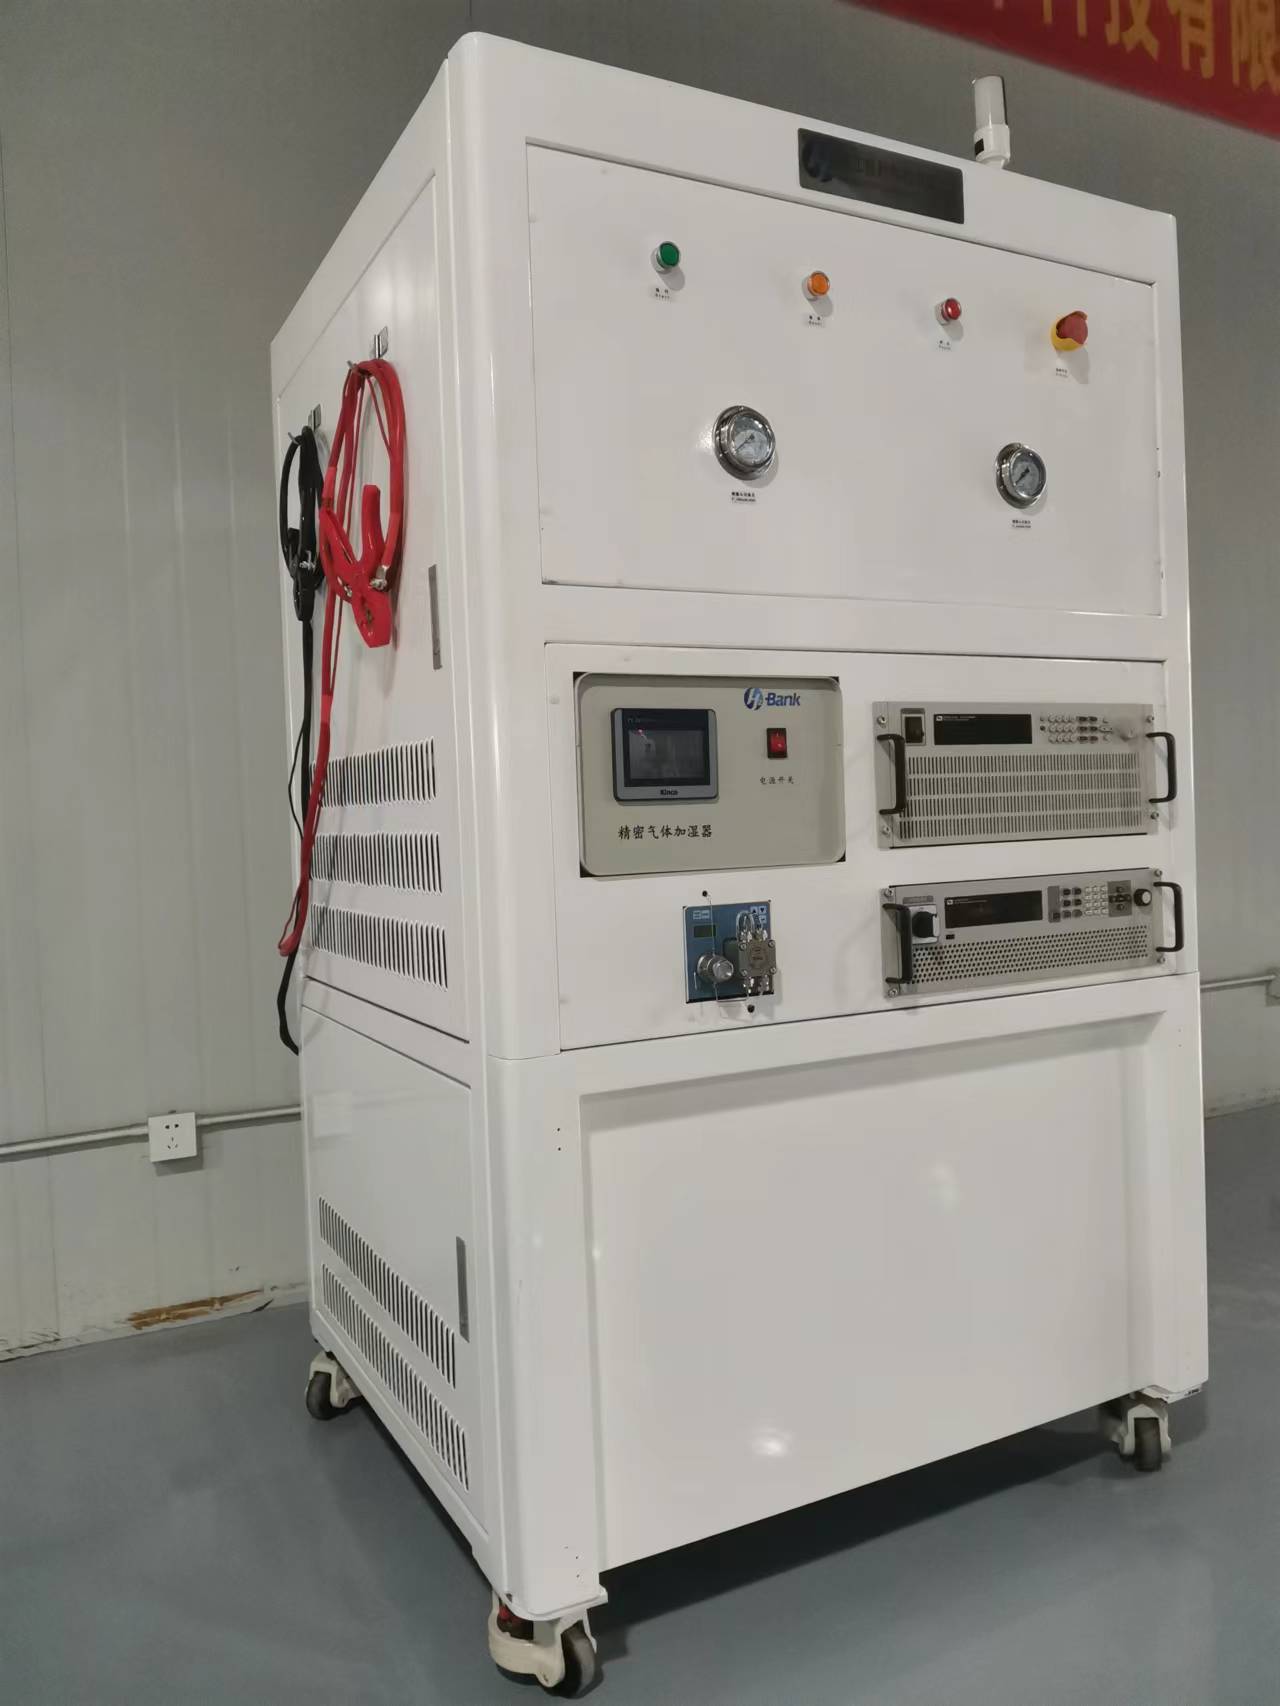 H2-Bank-5000型电堆测试设备